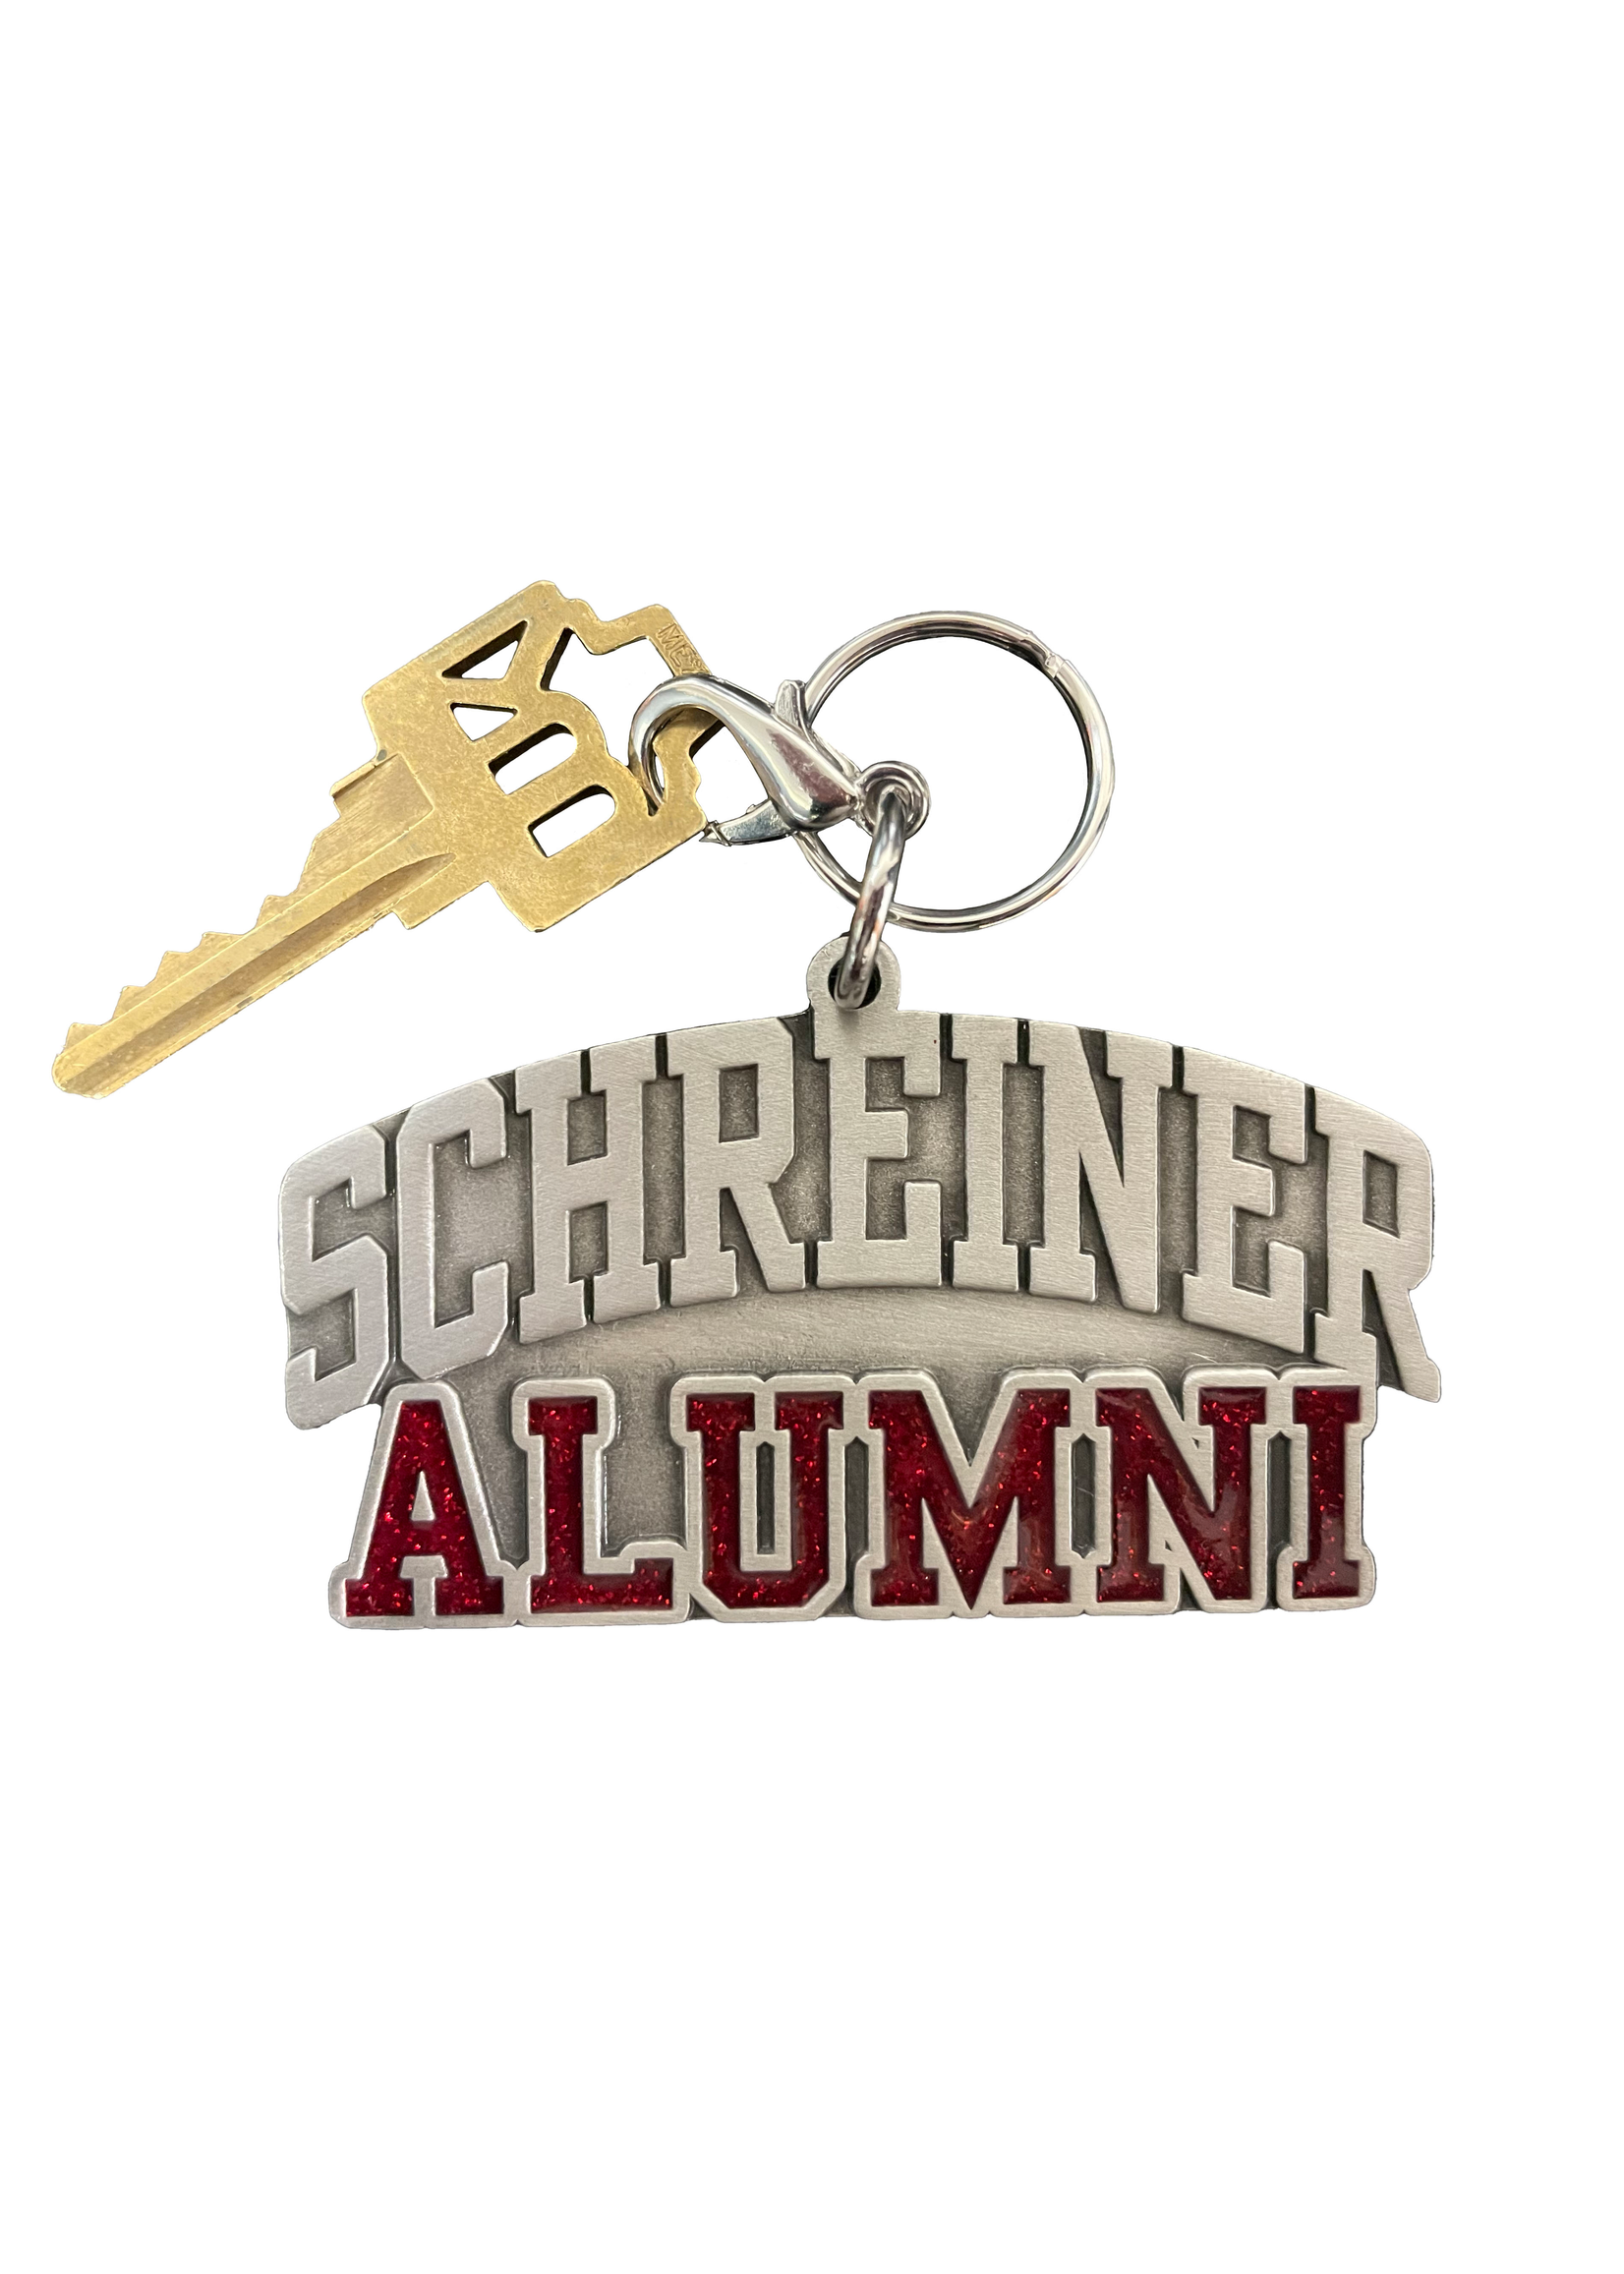 RFSJ, Inc. Schreiner Alumni Keychain